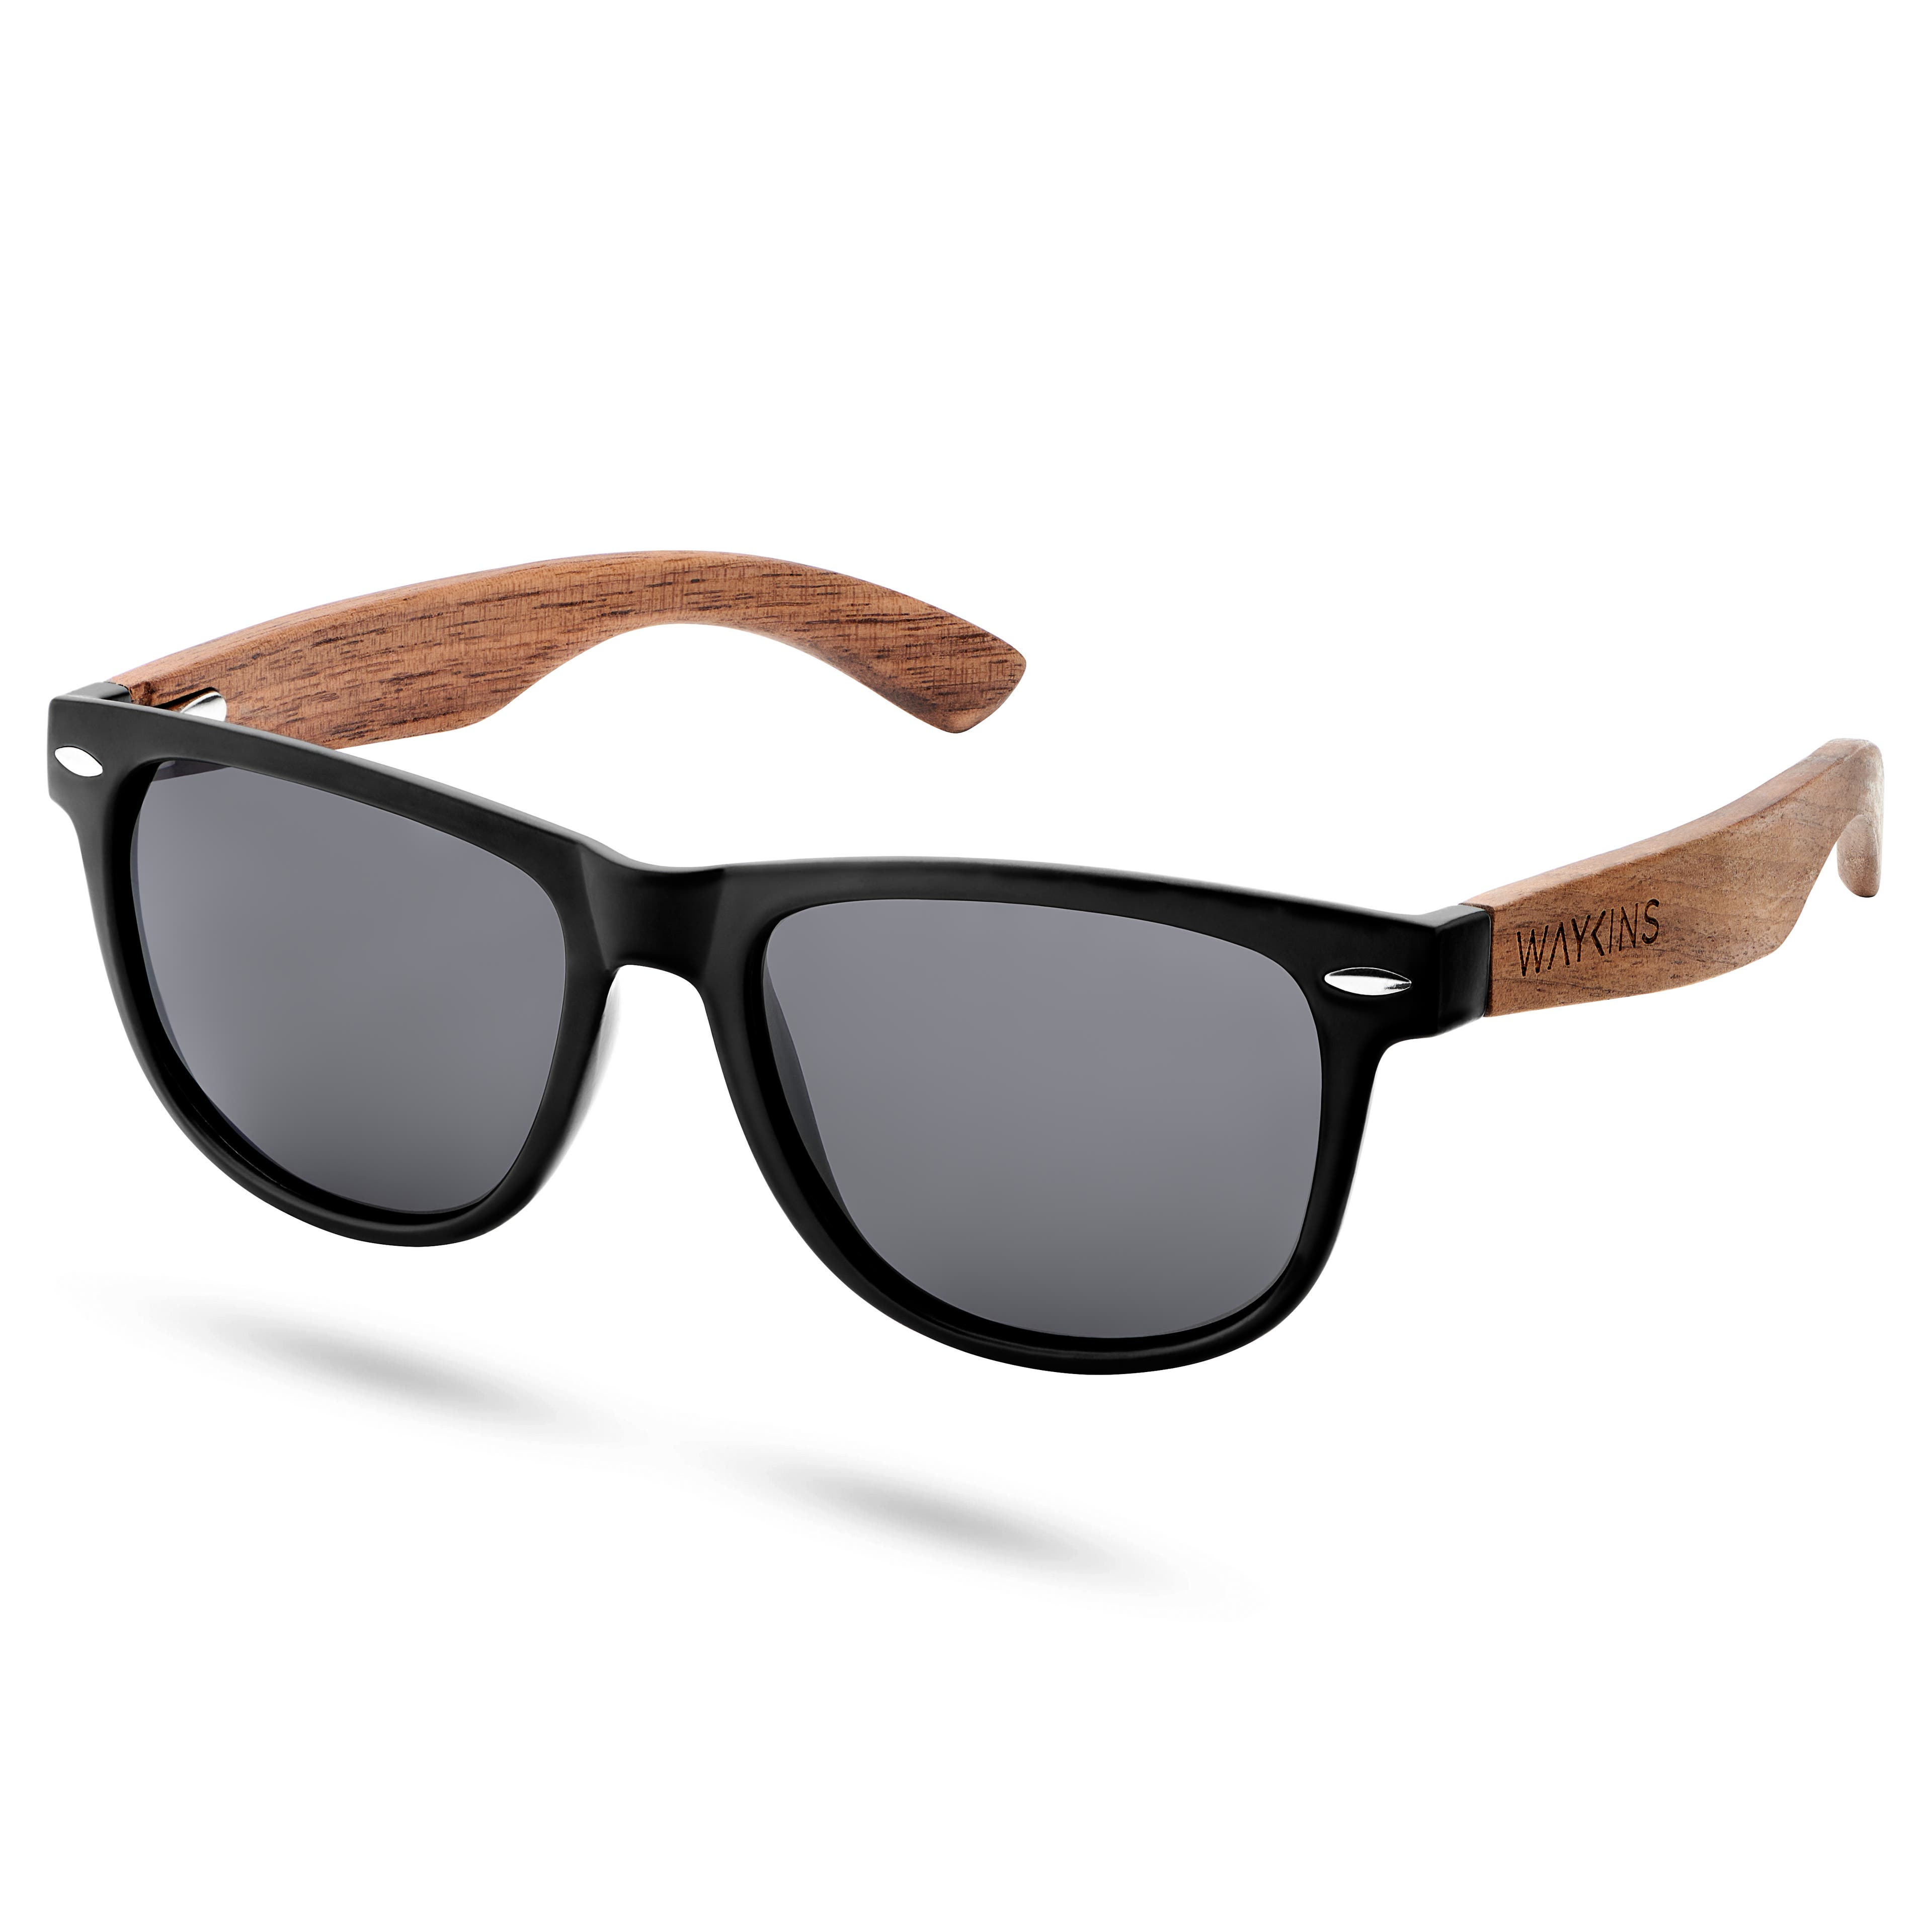 Ochelari de soare retro negri cu lentile polarizate și brațe din lemn